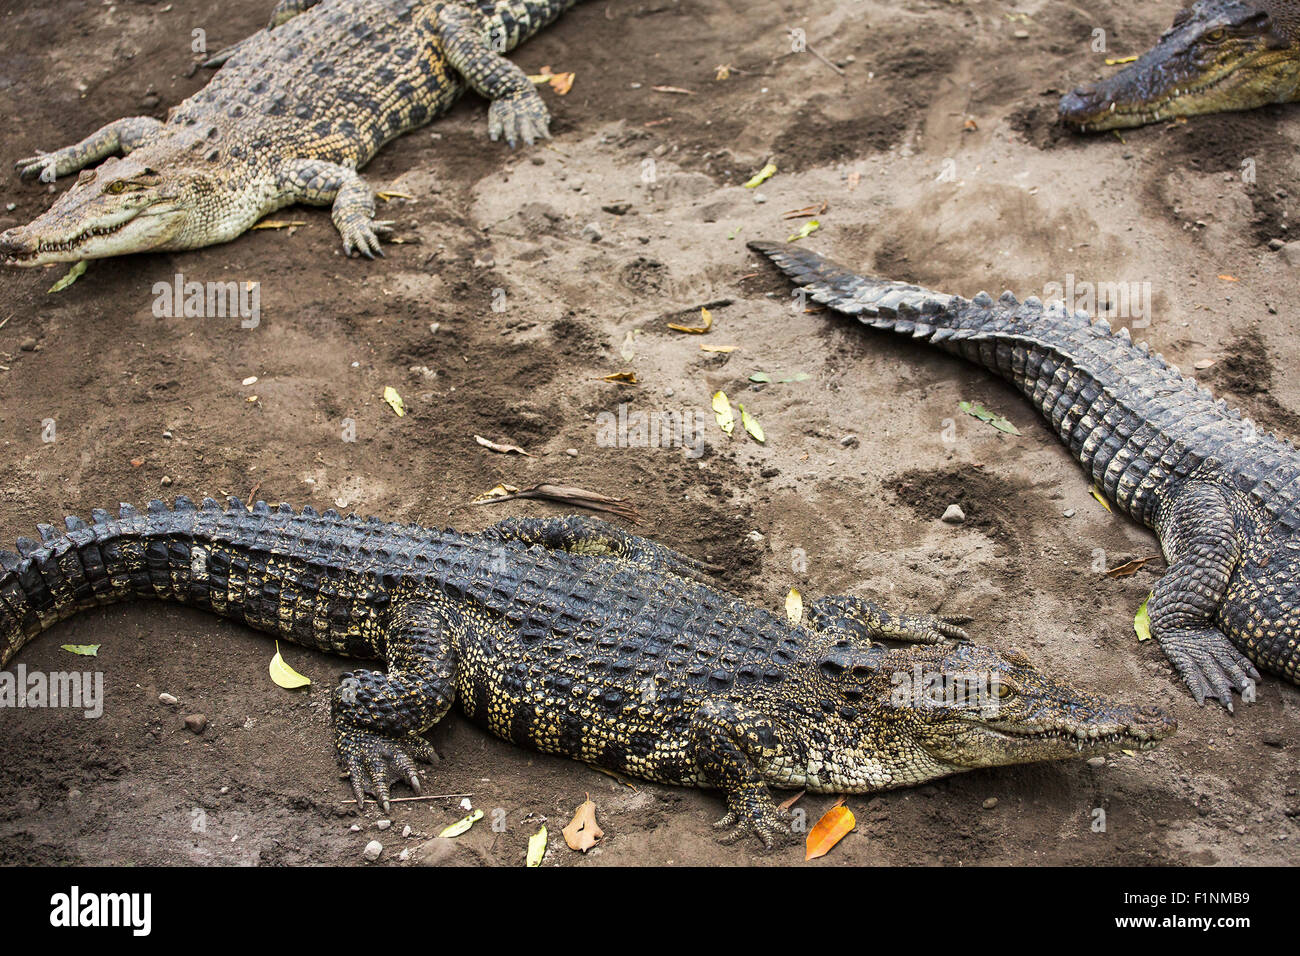 Crocodile vicino allo zoo, Indonesia. Composizione dei coccodrilli Foto Stock